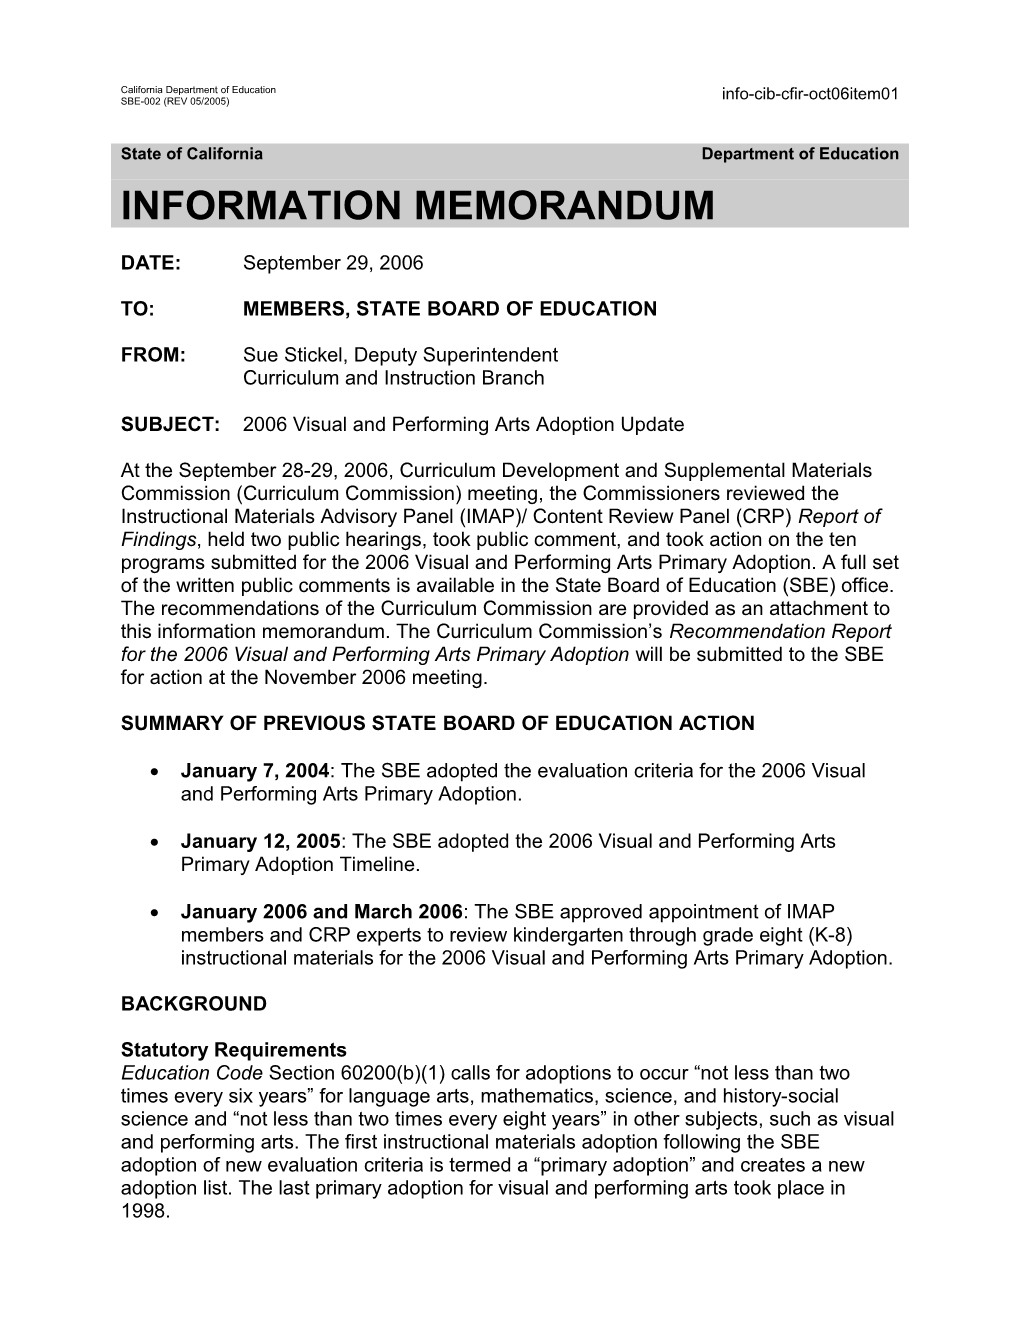 October 2006 CFIR Item 01 - Information Memorandum (CA State Board of Education)